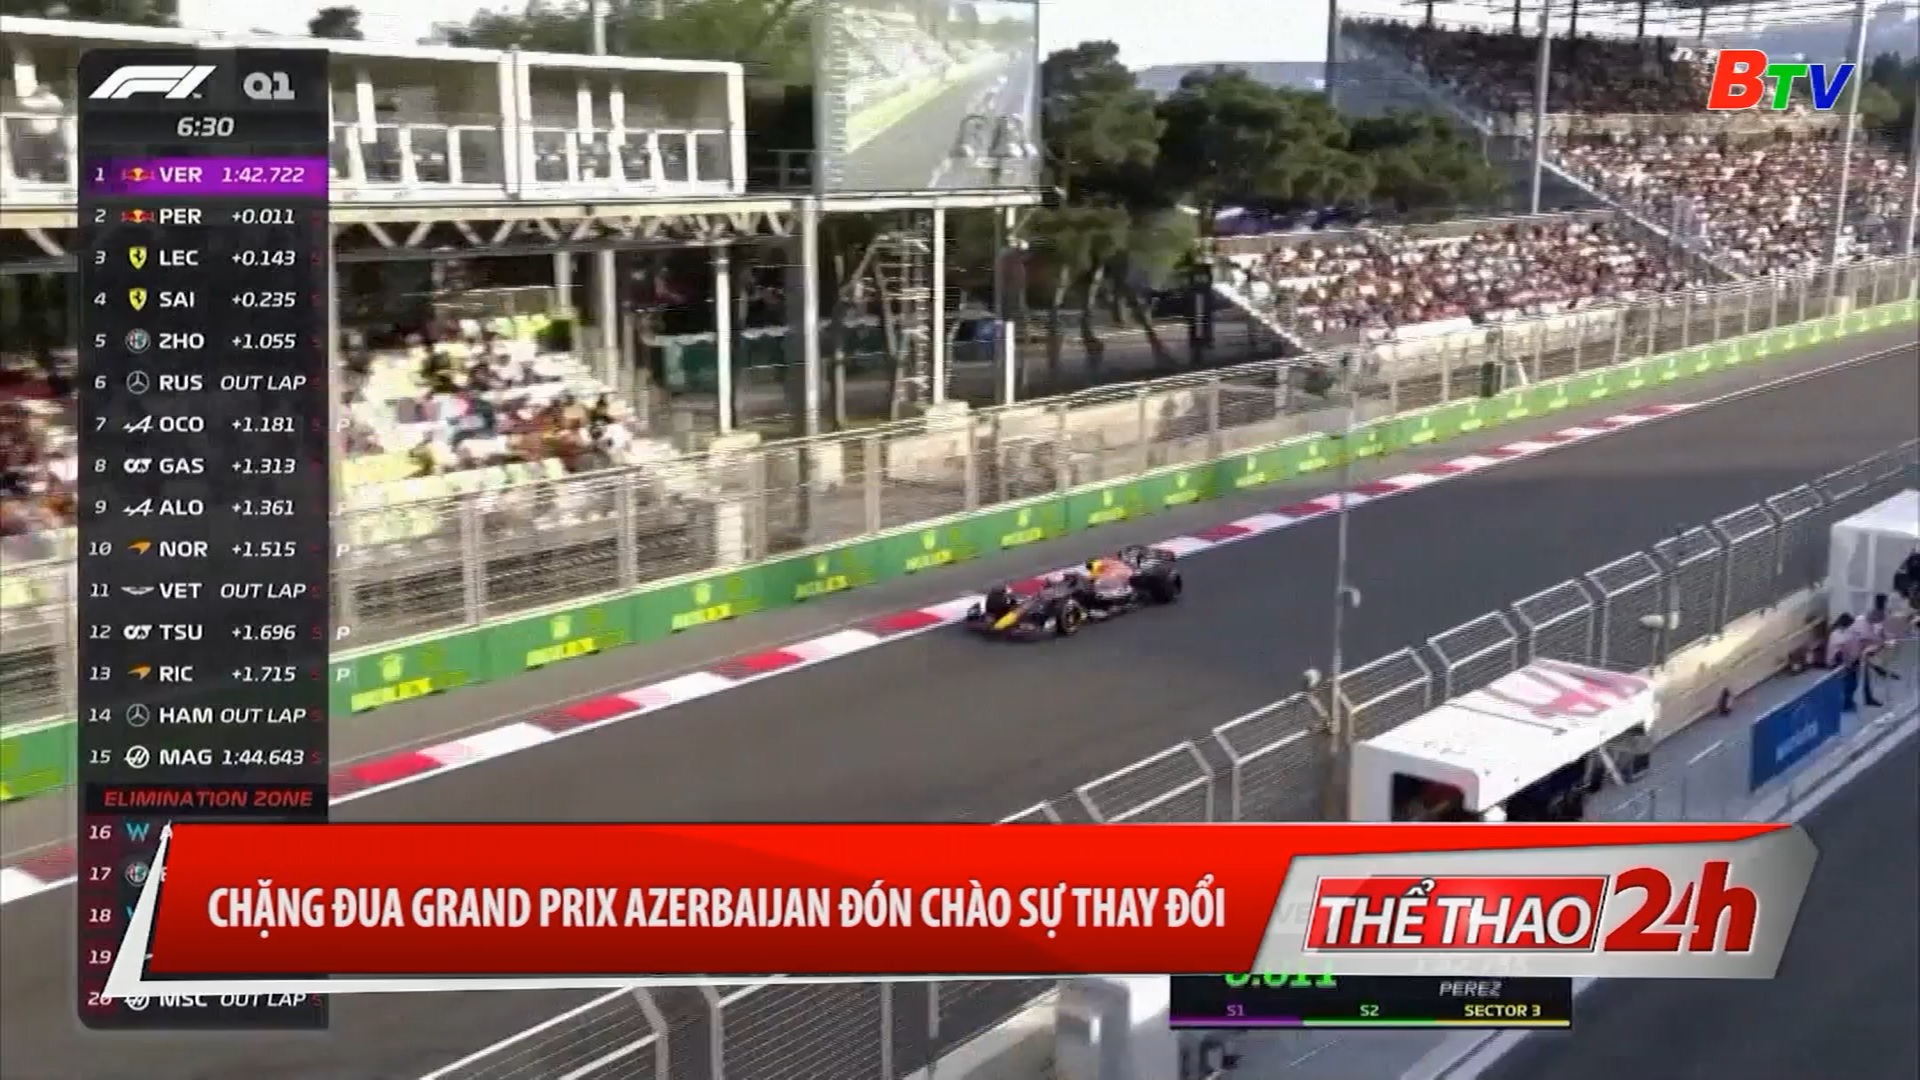 Chặng đua Grand Prix Azerbaijan đón chào sự thay đổi